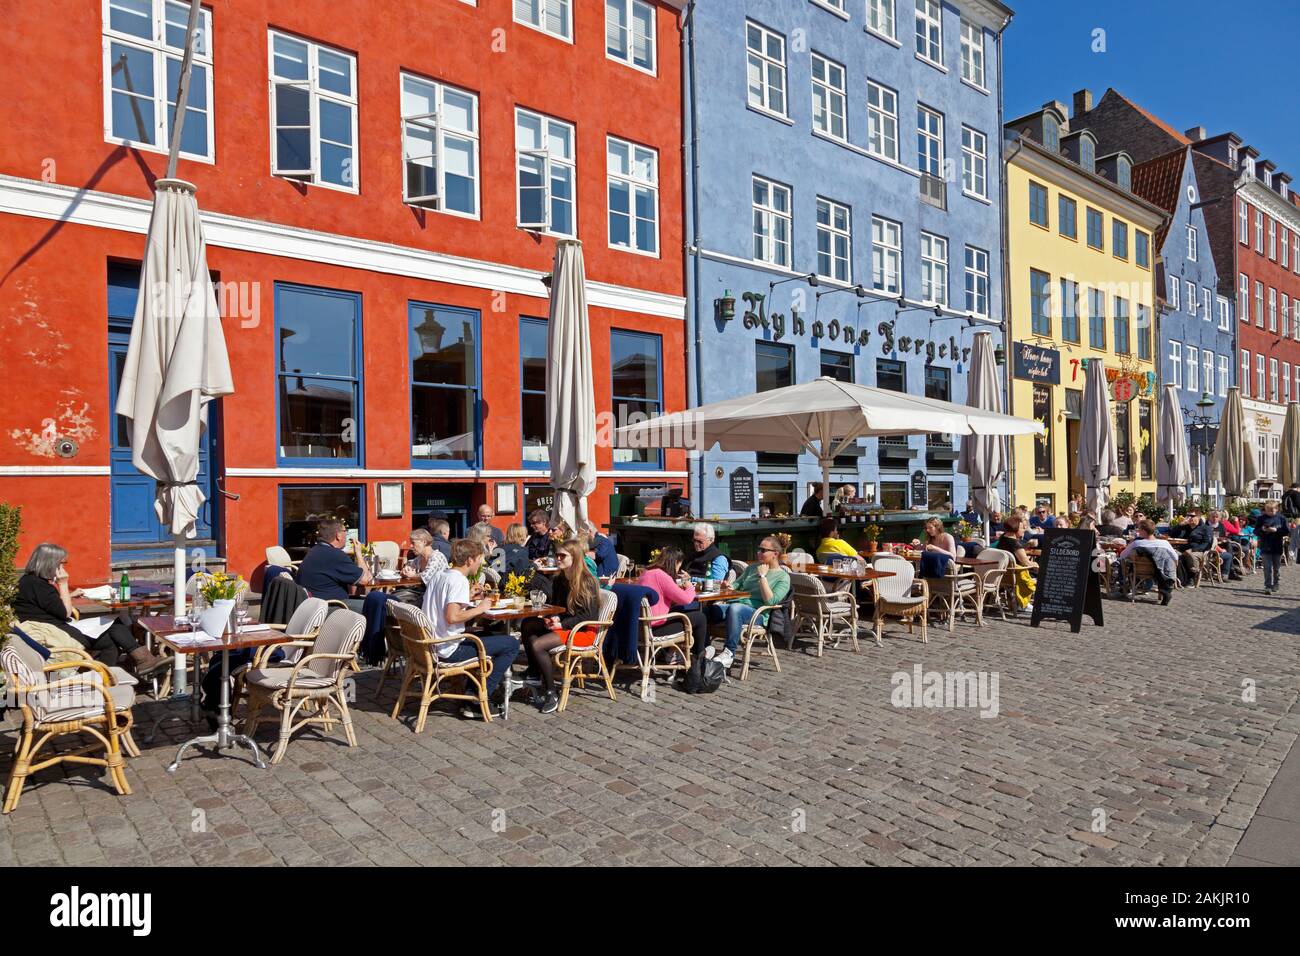 Gli storici ristoranti sul lungomare di Nyhavn, Copenhagen, attraggono centinaia di turisti e Copenaghen per un pranzo all'aperto in una soleggiata giornata primaverile. Foto Stock